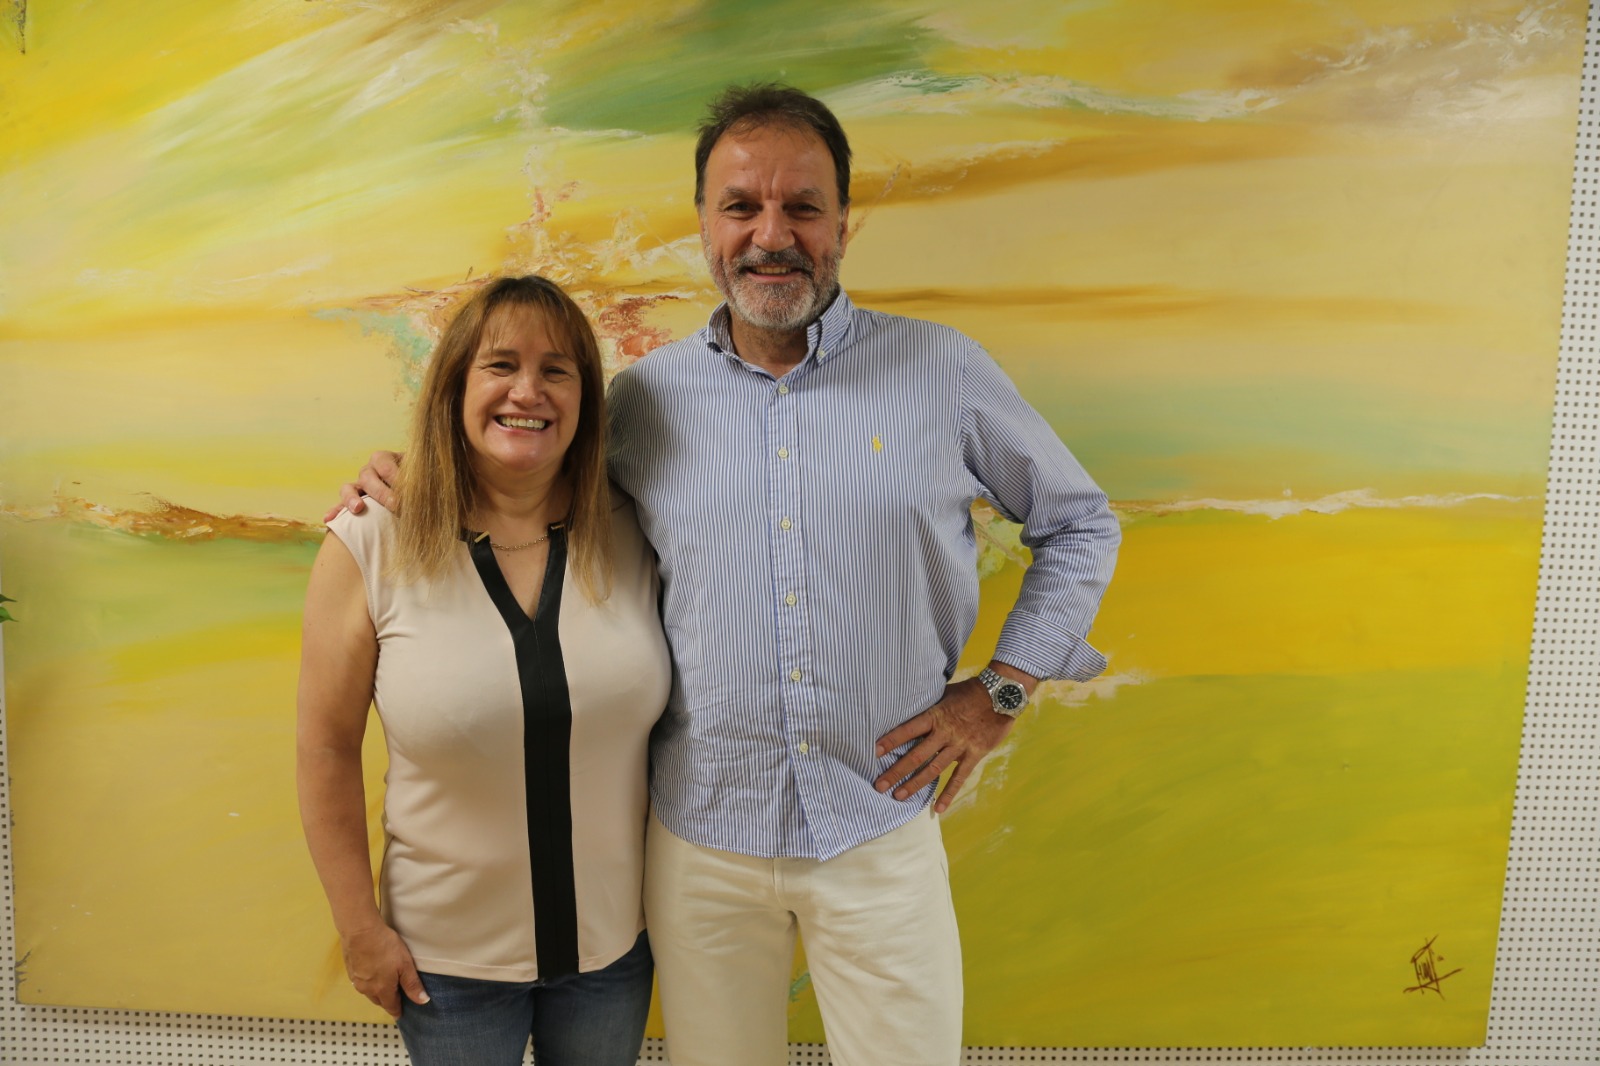 Benjamín Zorrilla y Patricia Murphy Doyle en el programa de EMPRESA 360 dirigido por Gracia Sánchez del Real